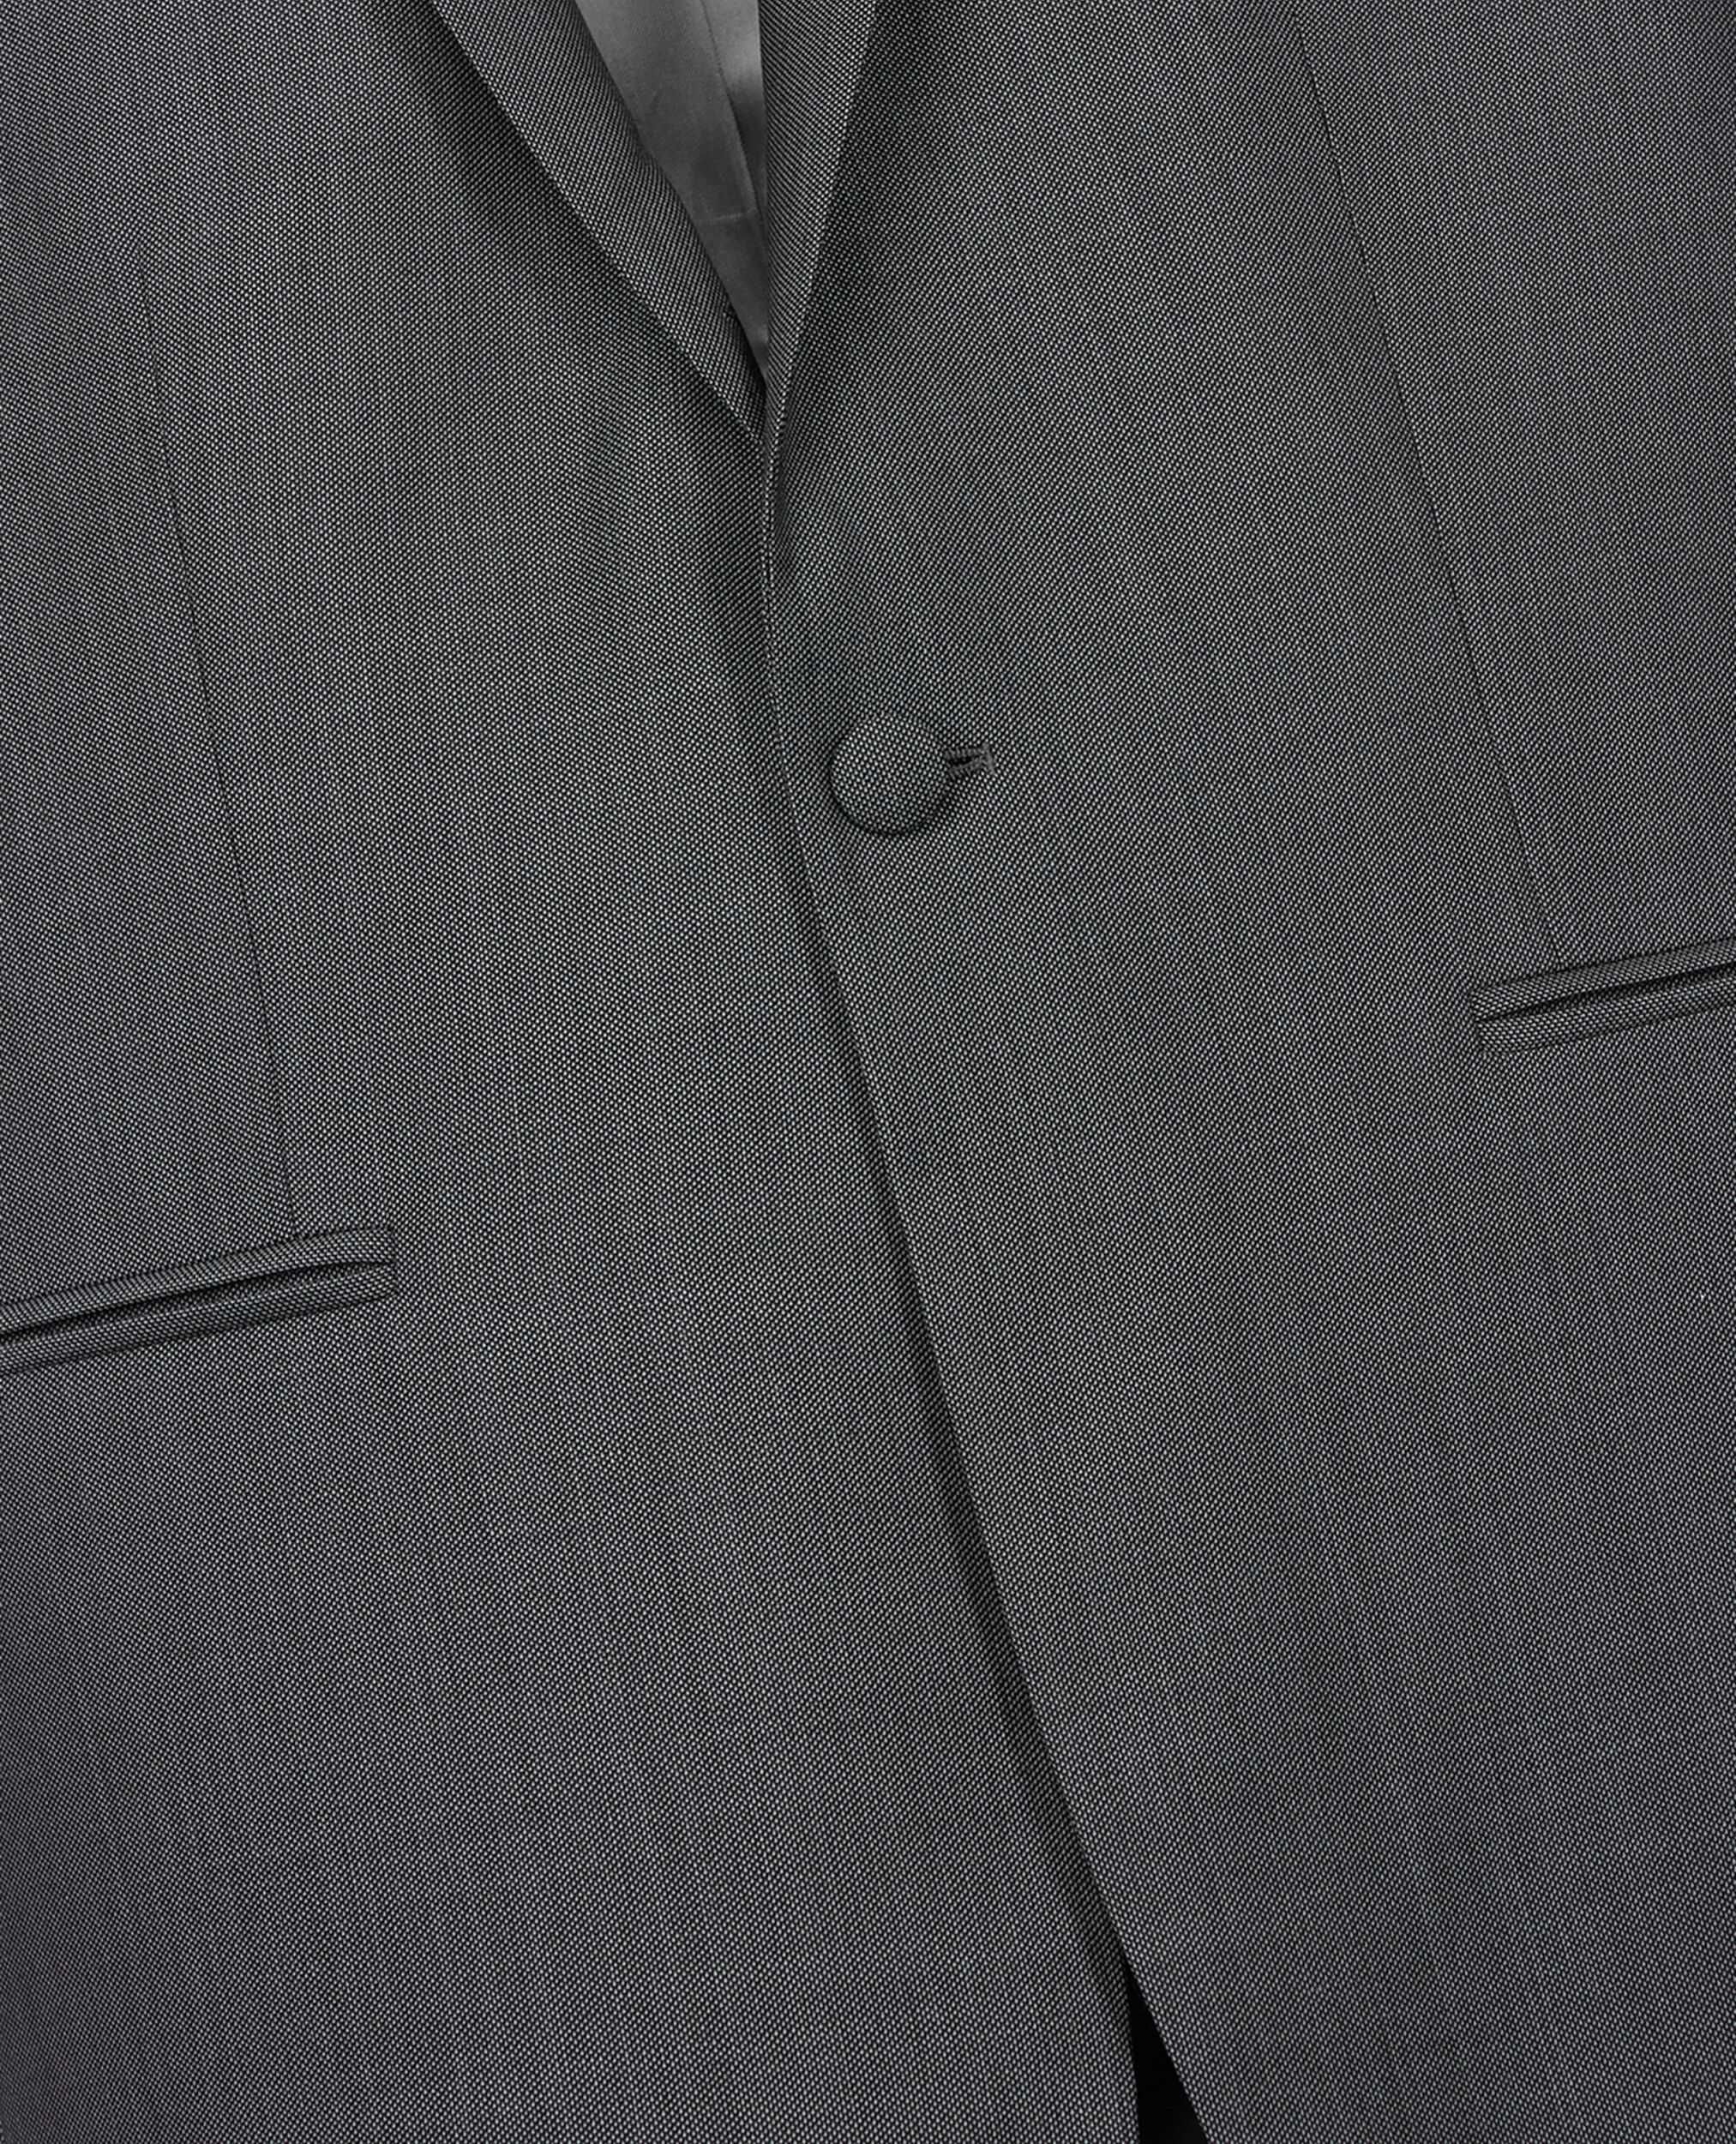 The Kooples Paris - 48-50  M - Піджак чоловічий сірий мужской пиджак